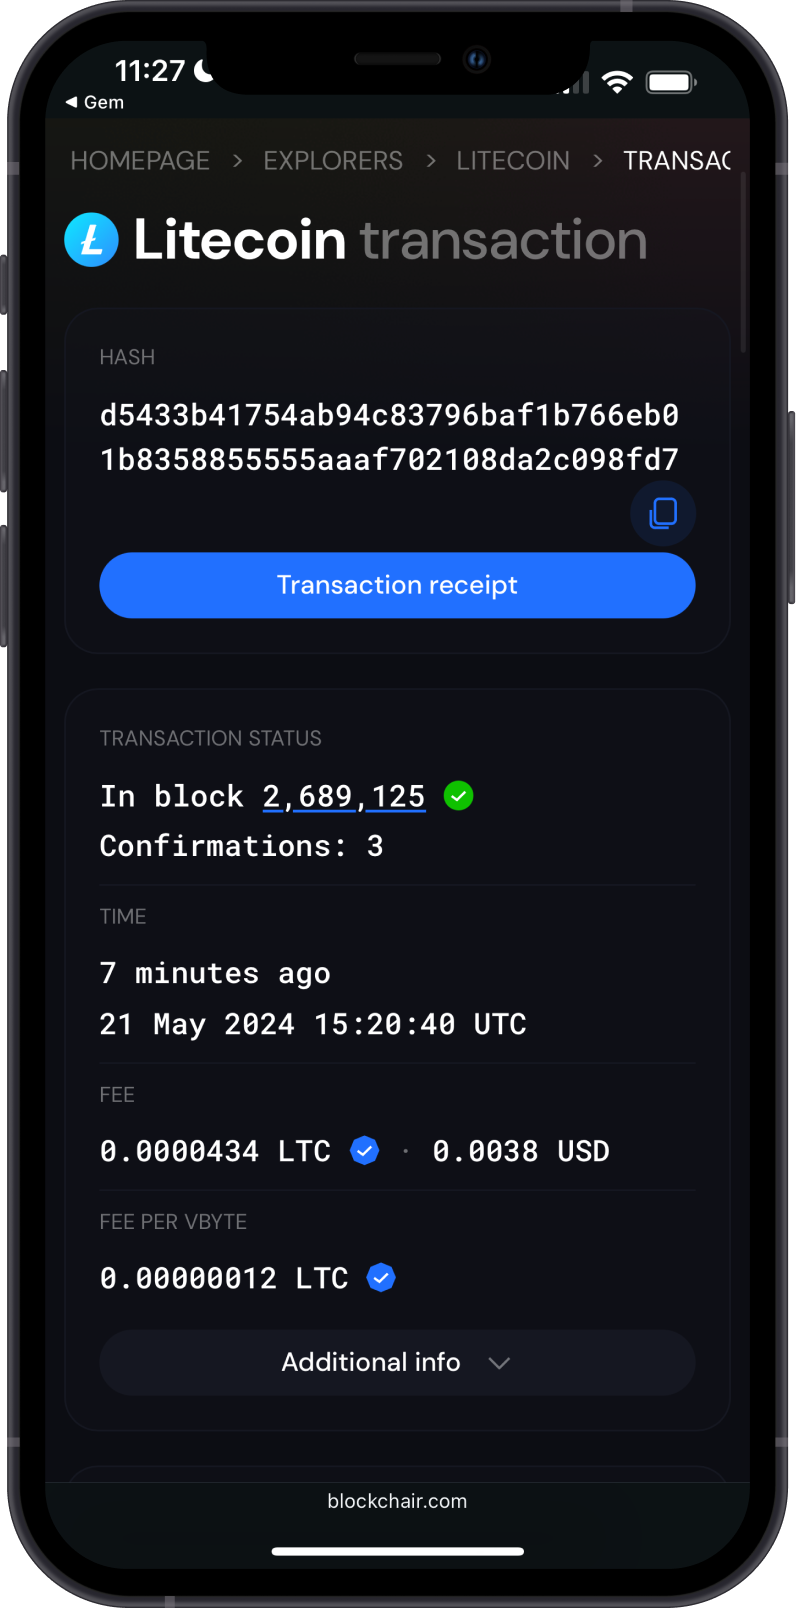 Litecoin transaction on Blockchair